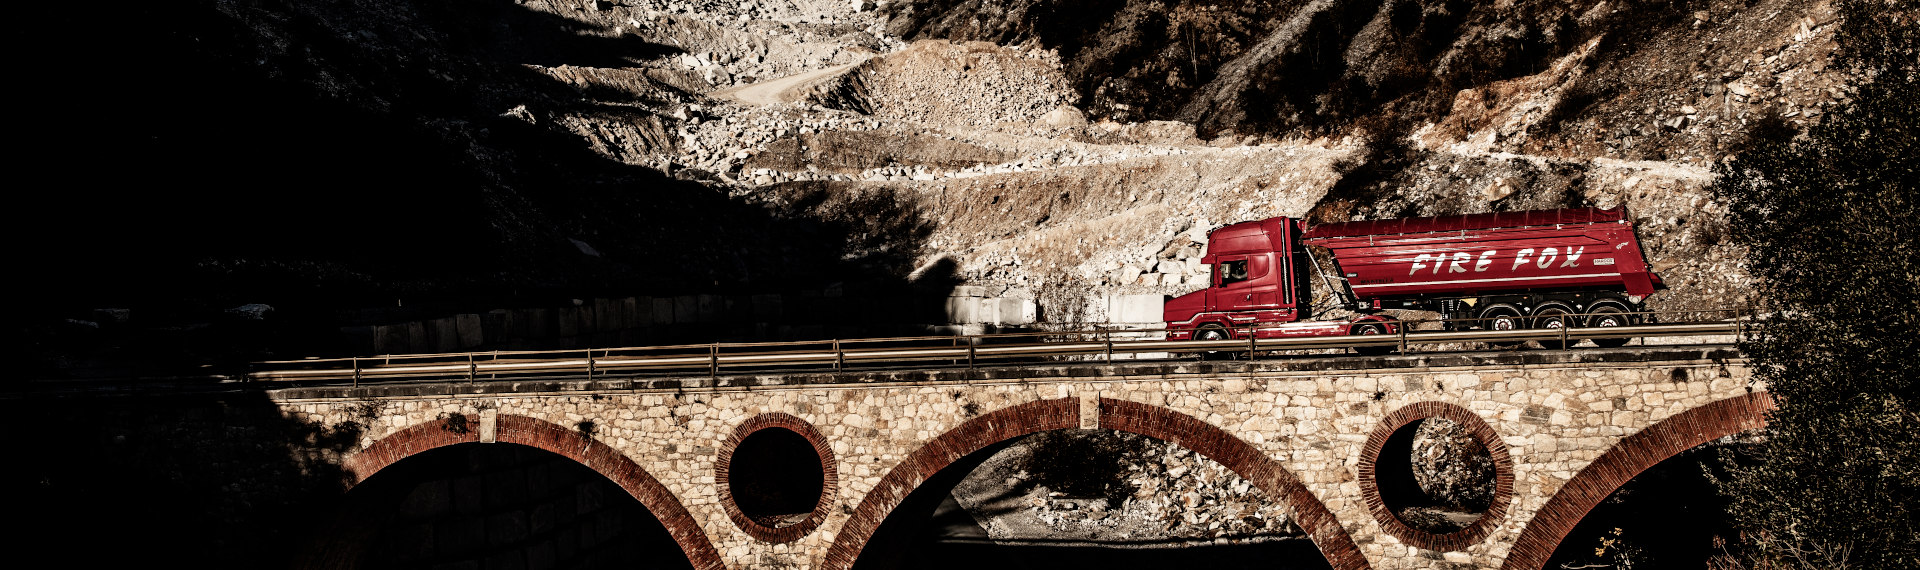 Un camión de Fire Fox de llamativo color rojo fabricado con chapas de acero Hardox® 500 Tuf cruzando un puente